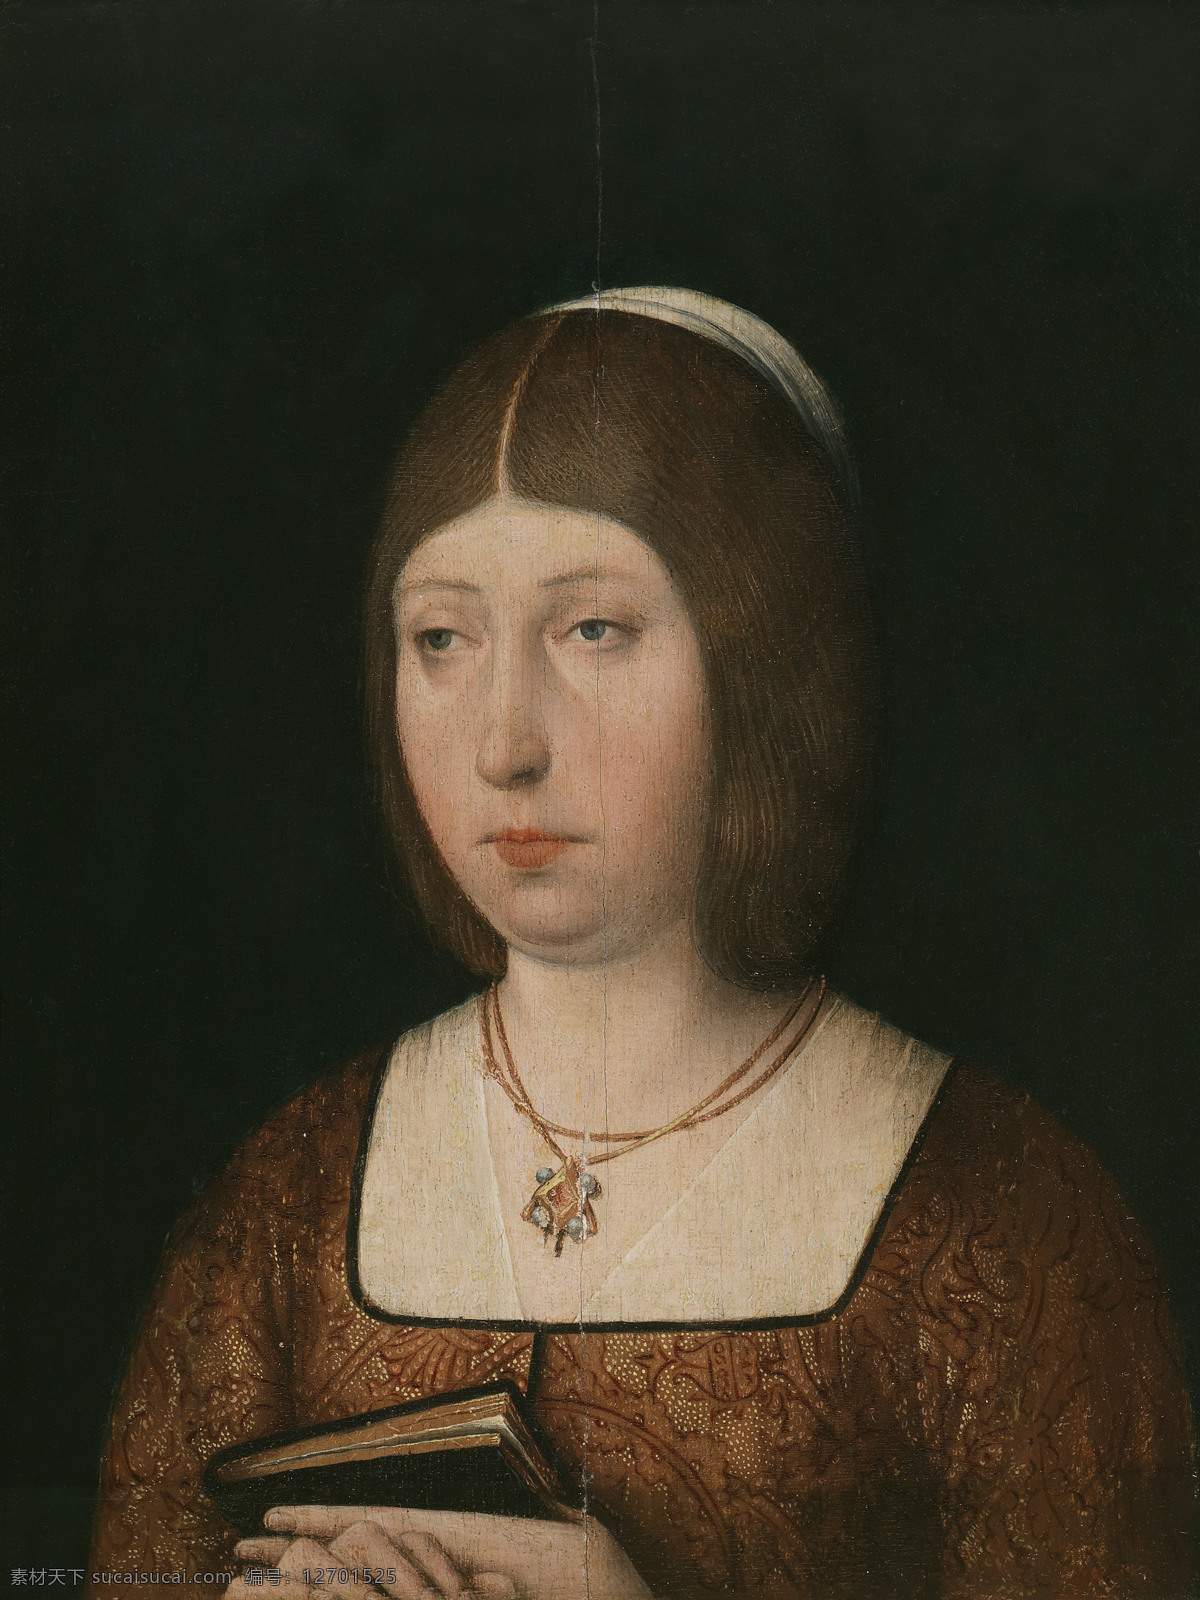 绘画书法 文化艺术 油画 卡斯蒂利亚 伊莎贝尔 设计素材 模板下载 胡安二世之女 西班牙女王 史 称 一世 哥特时期 卡罗斯 外祖母 圣 罗马 皇帝 费迪南 二世 之外祖母 古油画